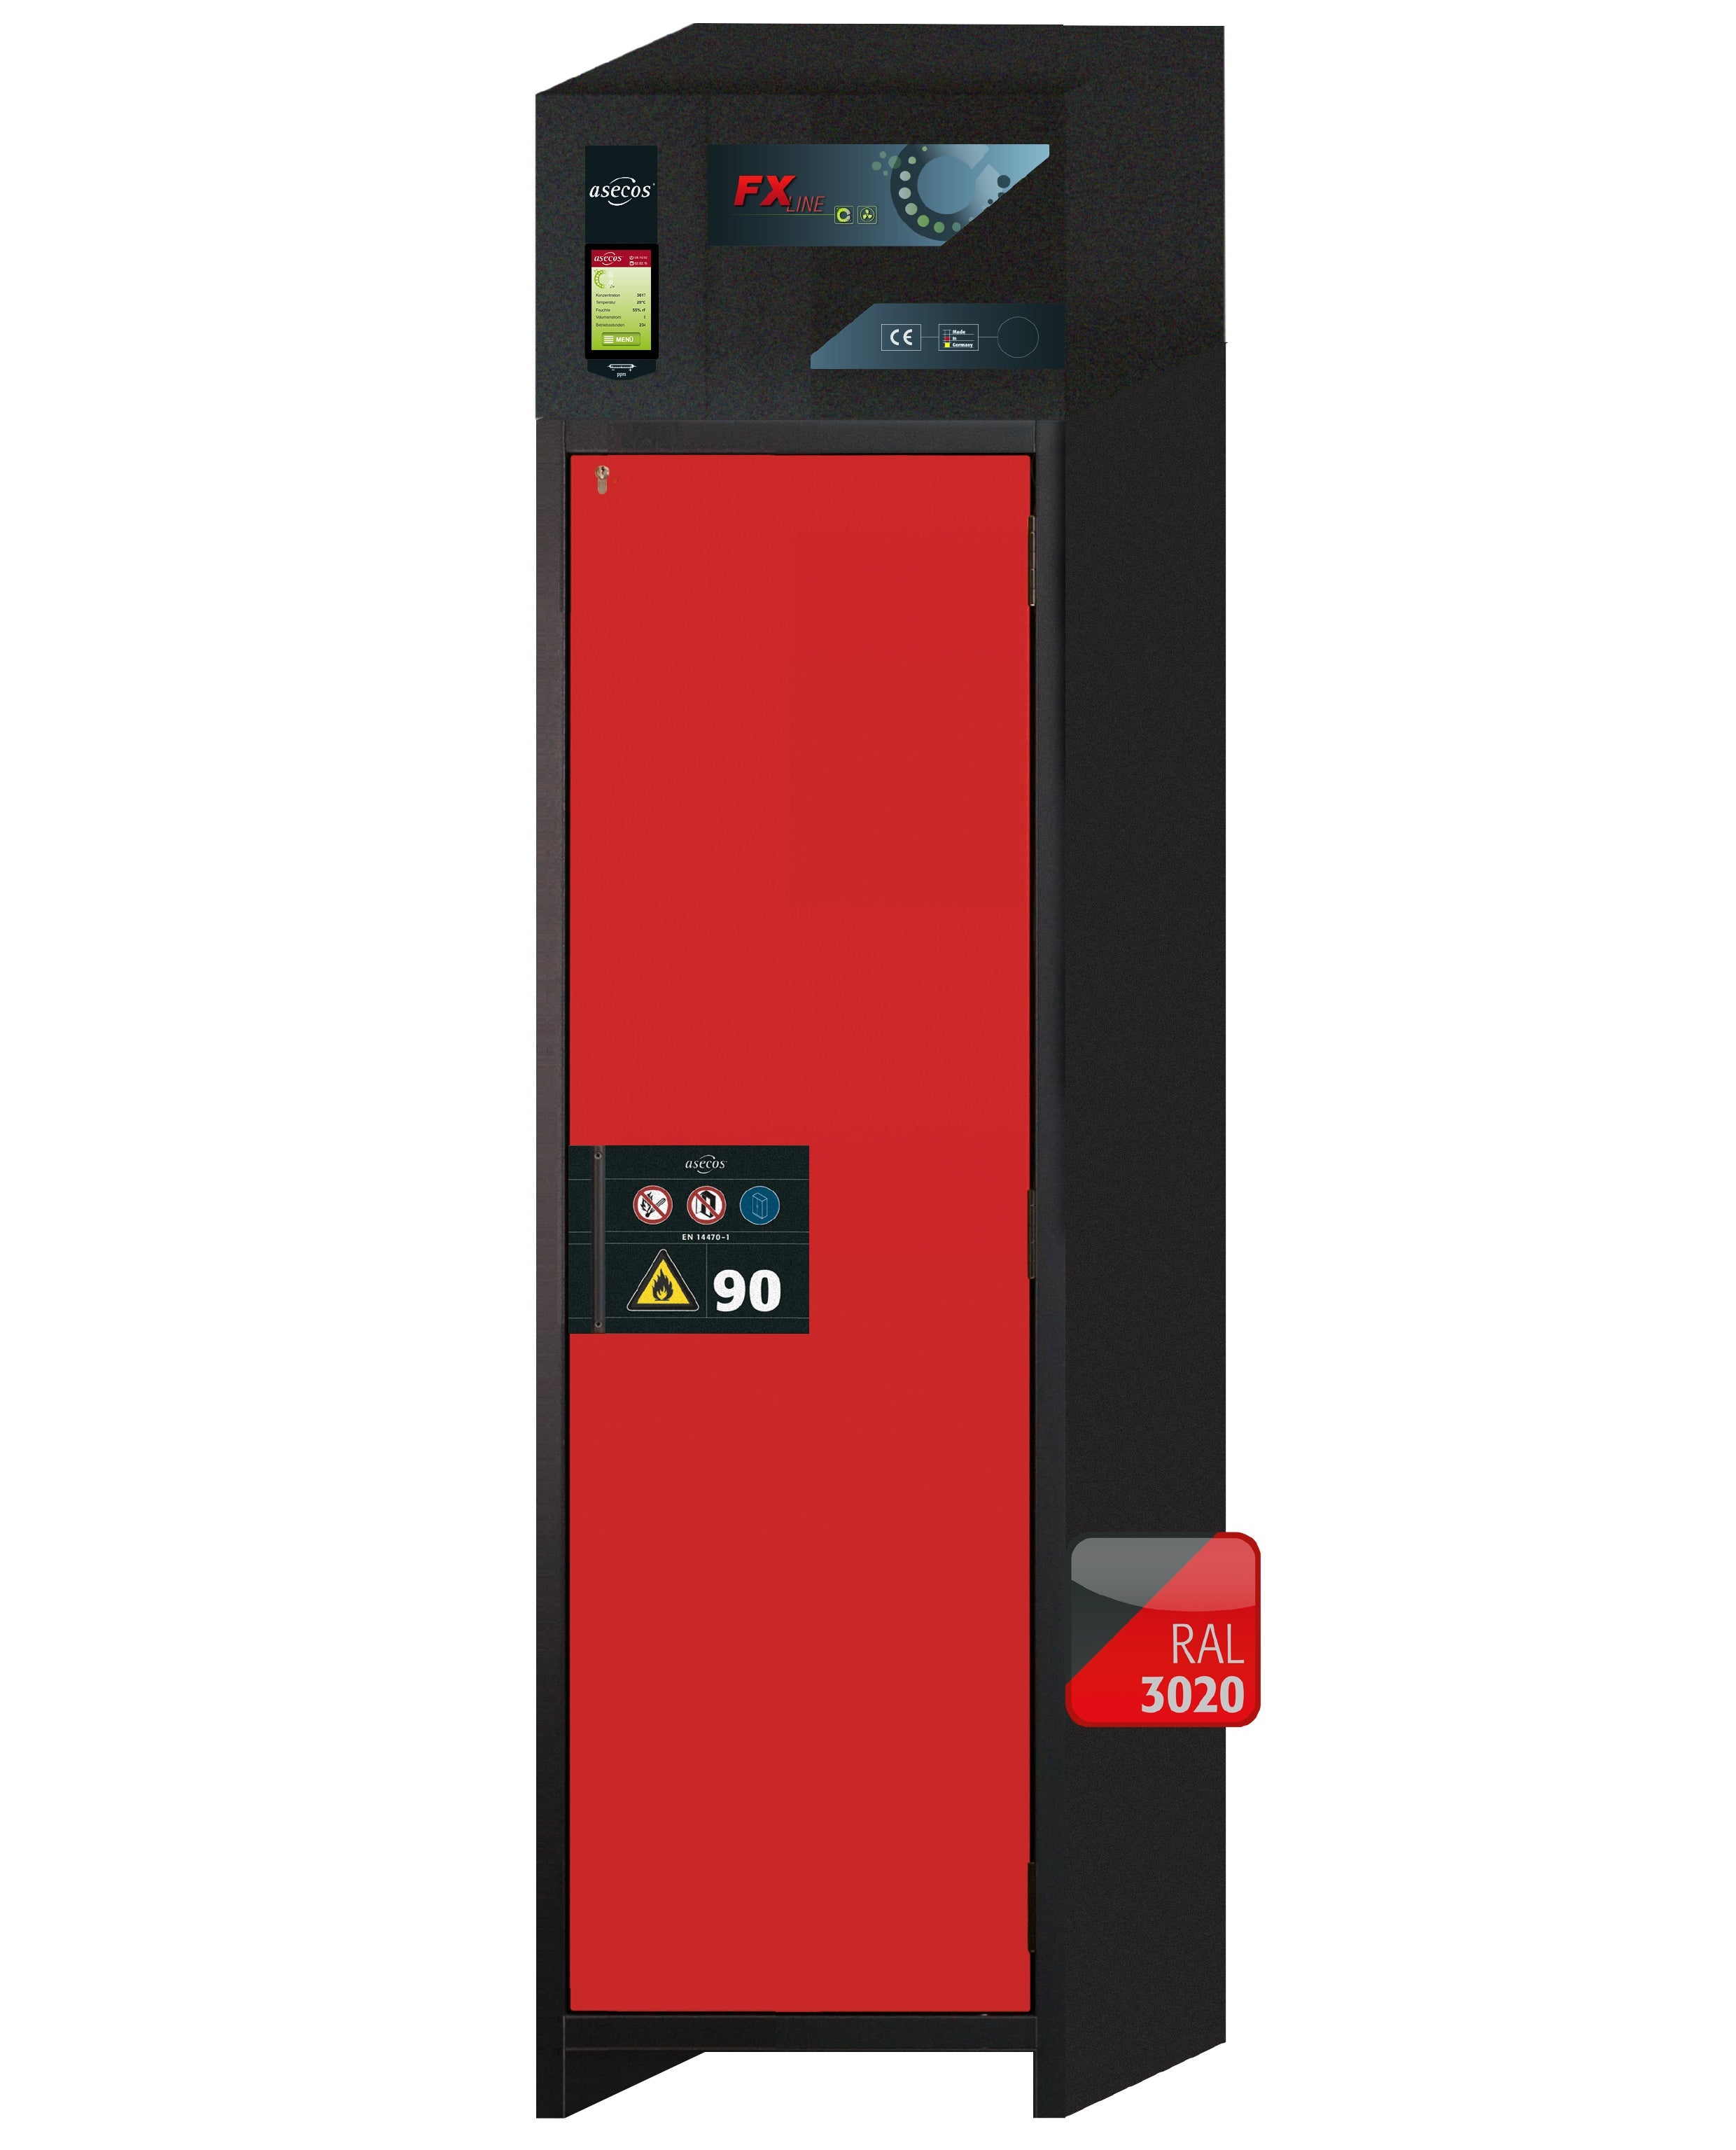 Armoire de filtration d'air de recirculation de type 90 FX-PEGASUS-90 modèle FX90.229.060.WDACR en rouge signalisation RAL 3020 avec 4 étagères standard (acier inoxydable 1.4301)